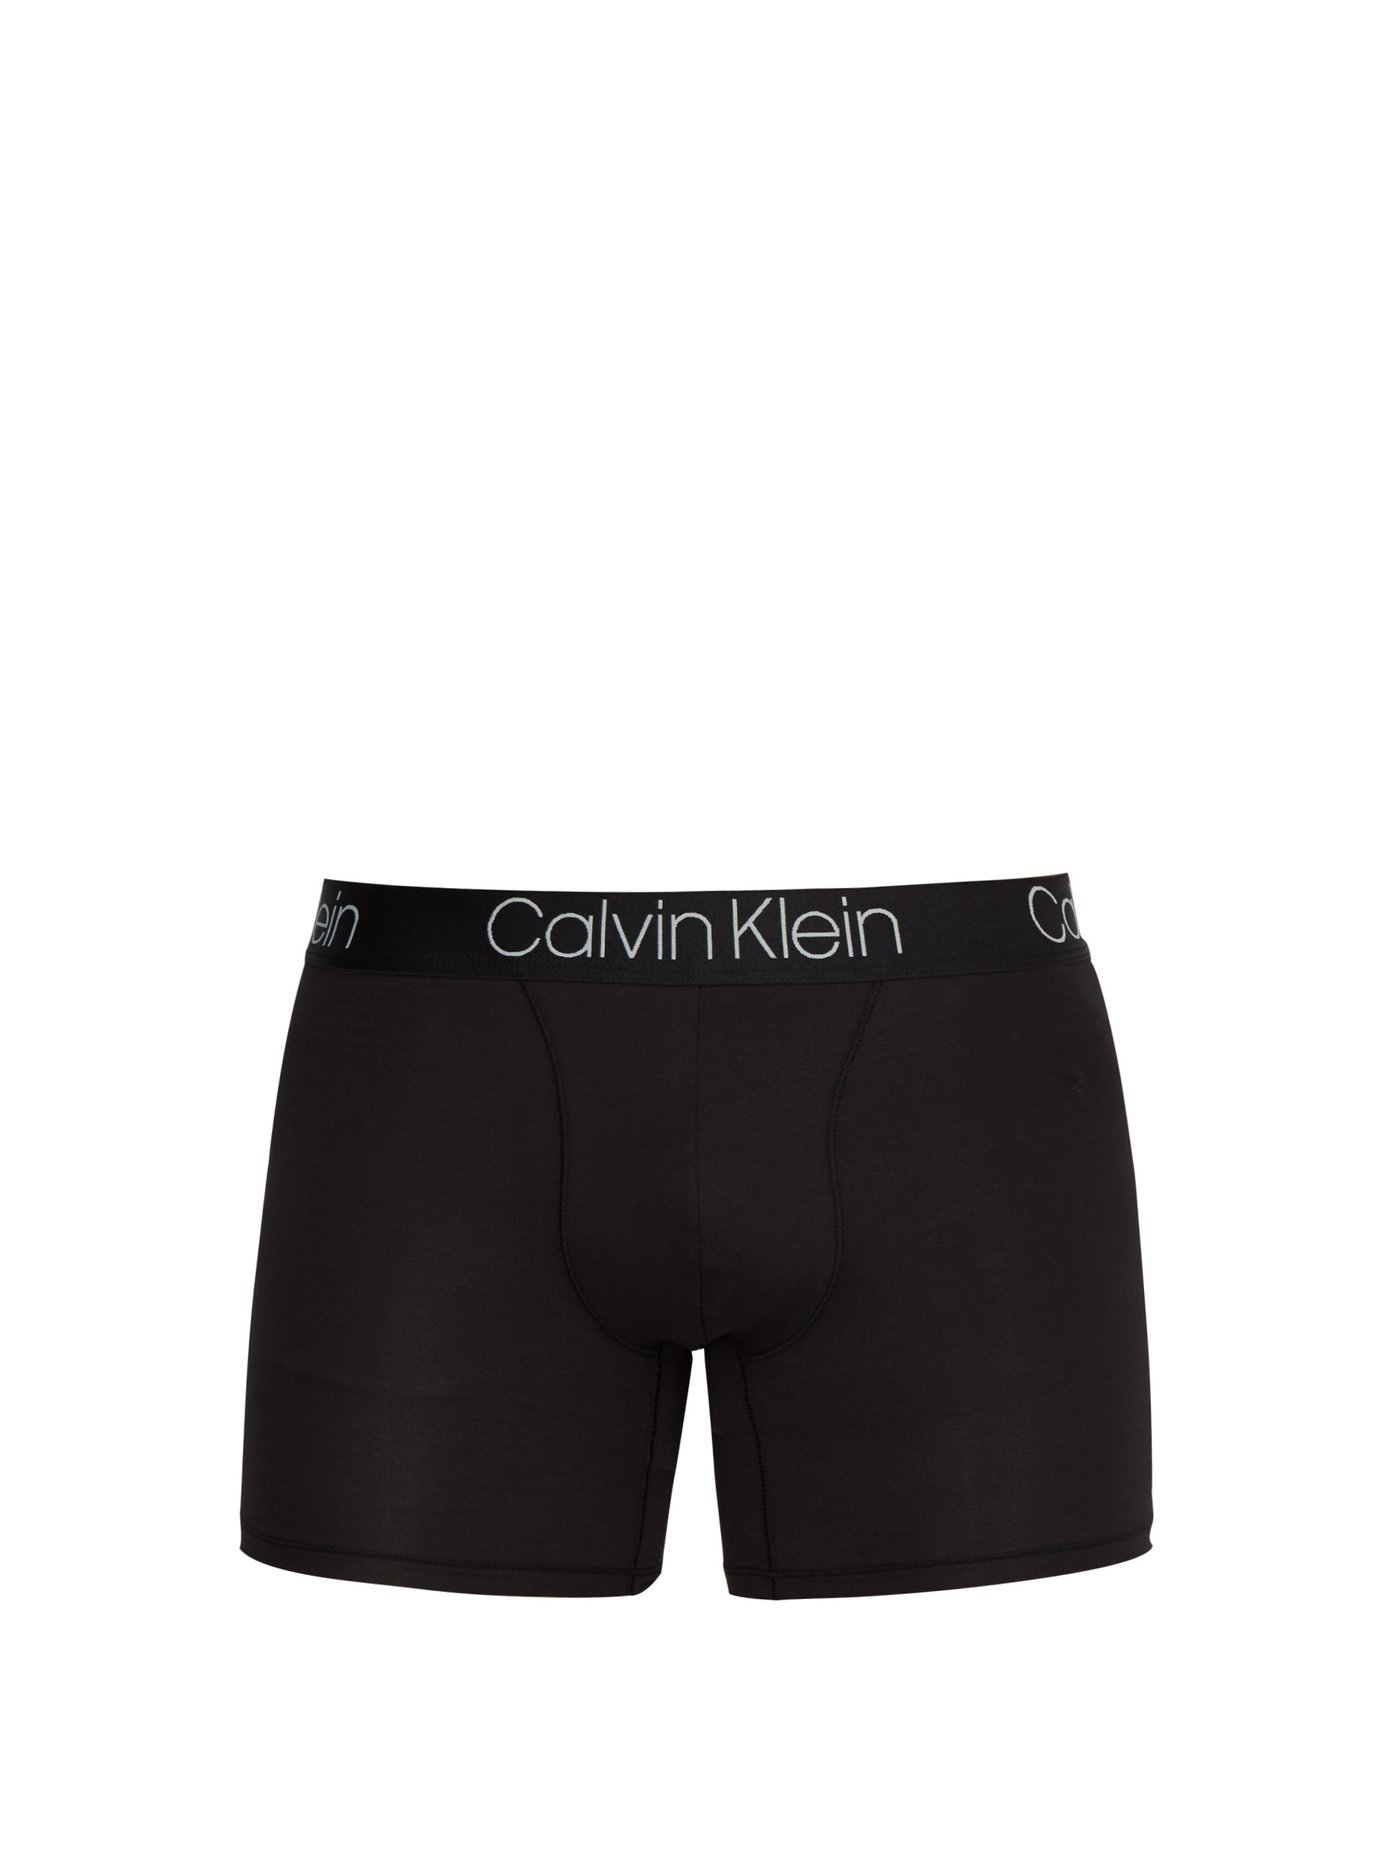 cost of calvin klein underwear